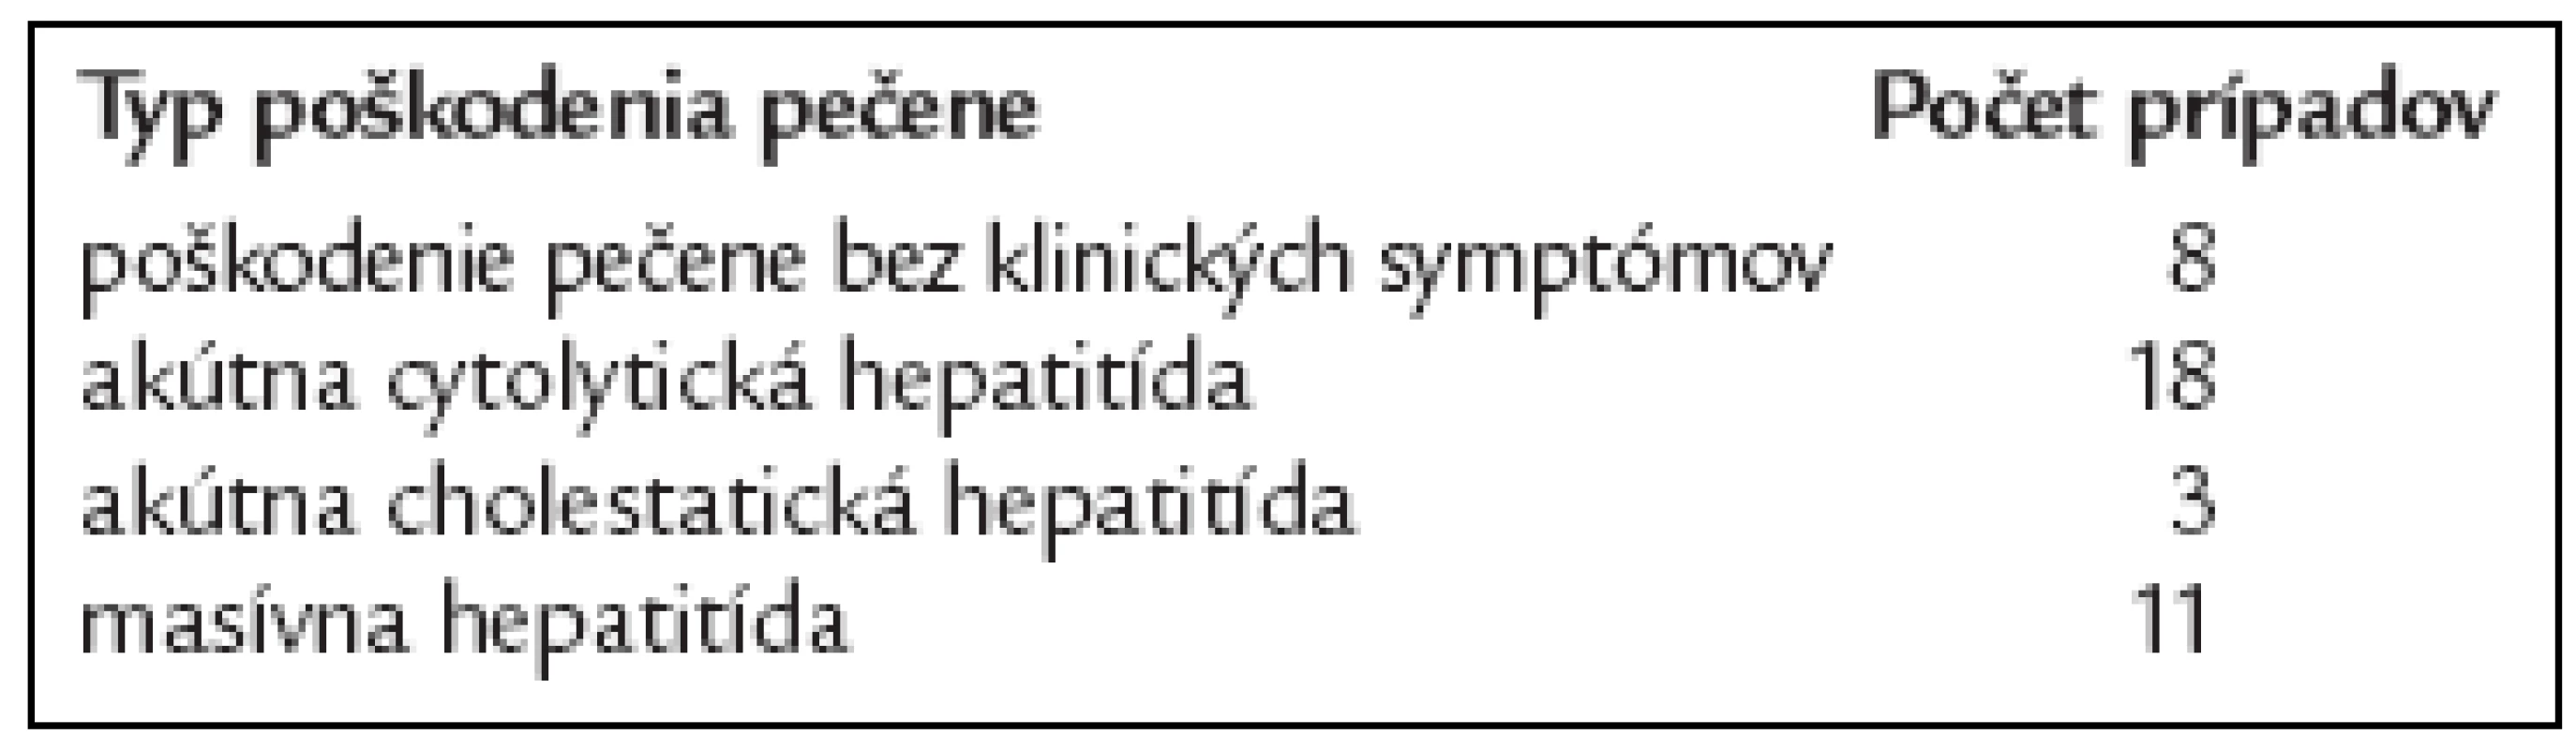 Zhrnutie literárnych údajov o nežiadúcich hepatálnych účinkoch nimesulidu [3].